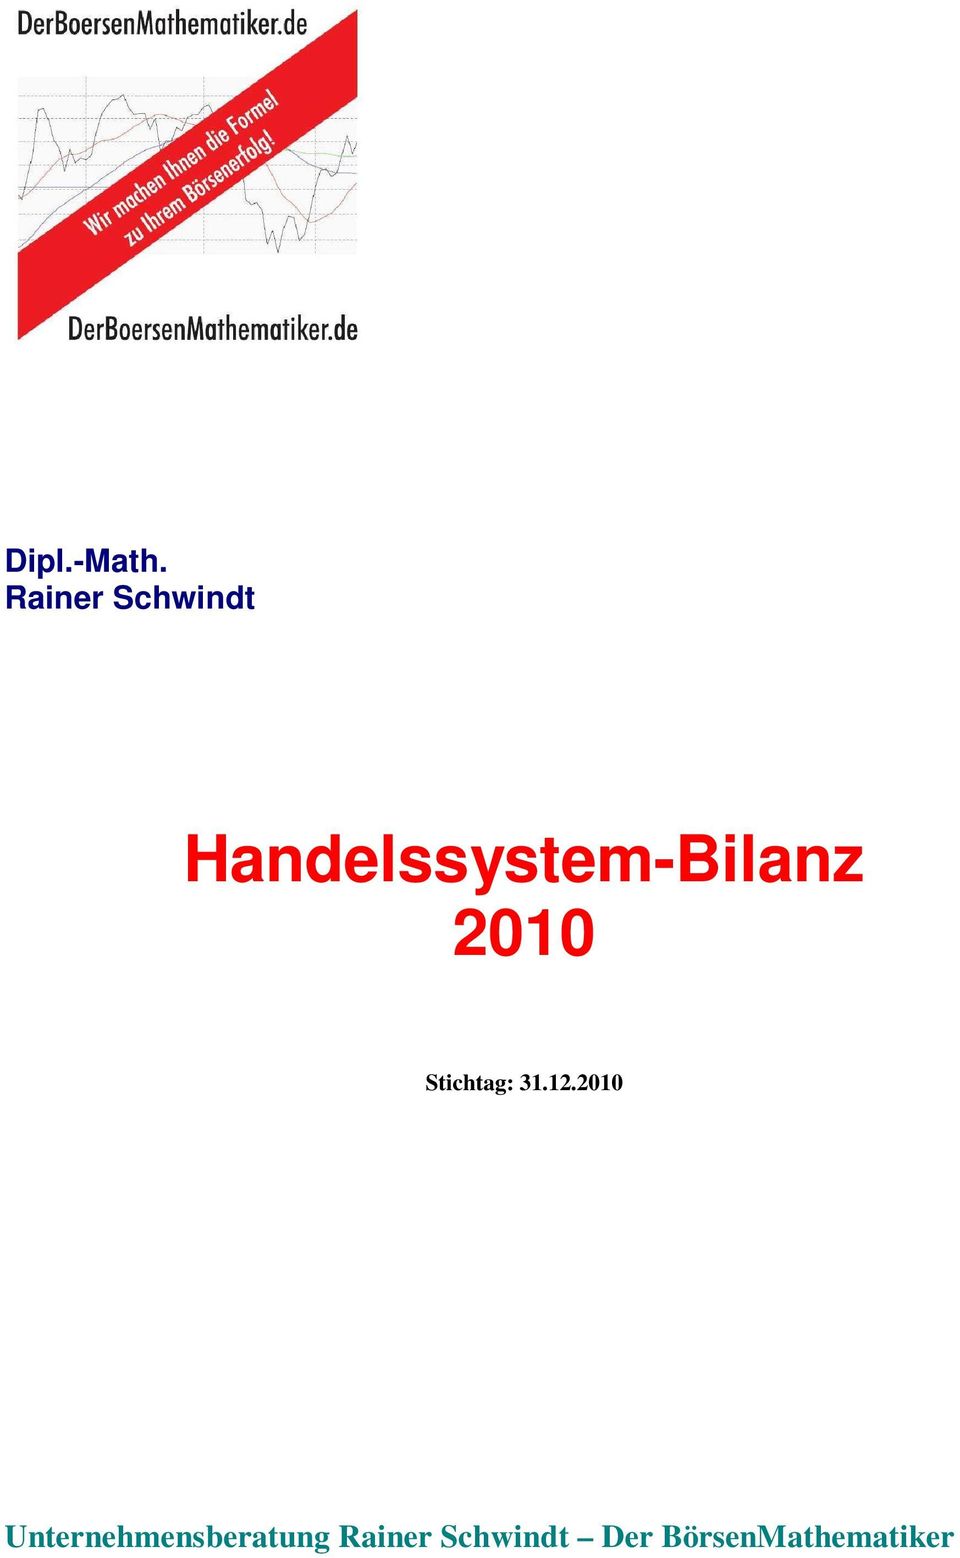 Handelssystem-Bilanz 2010